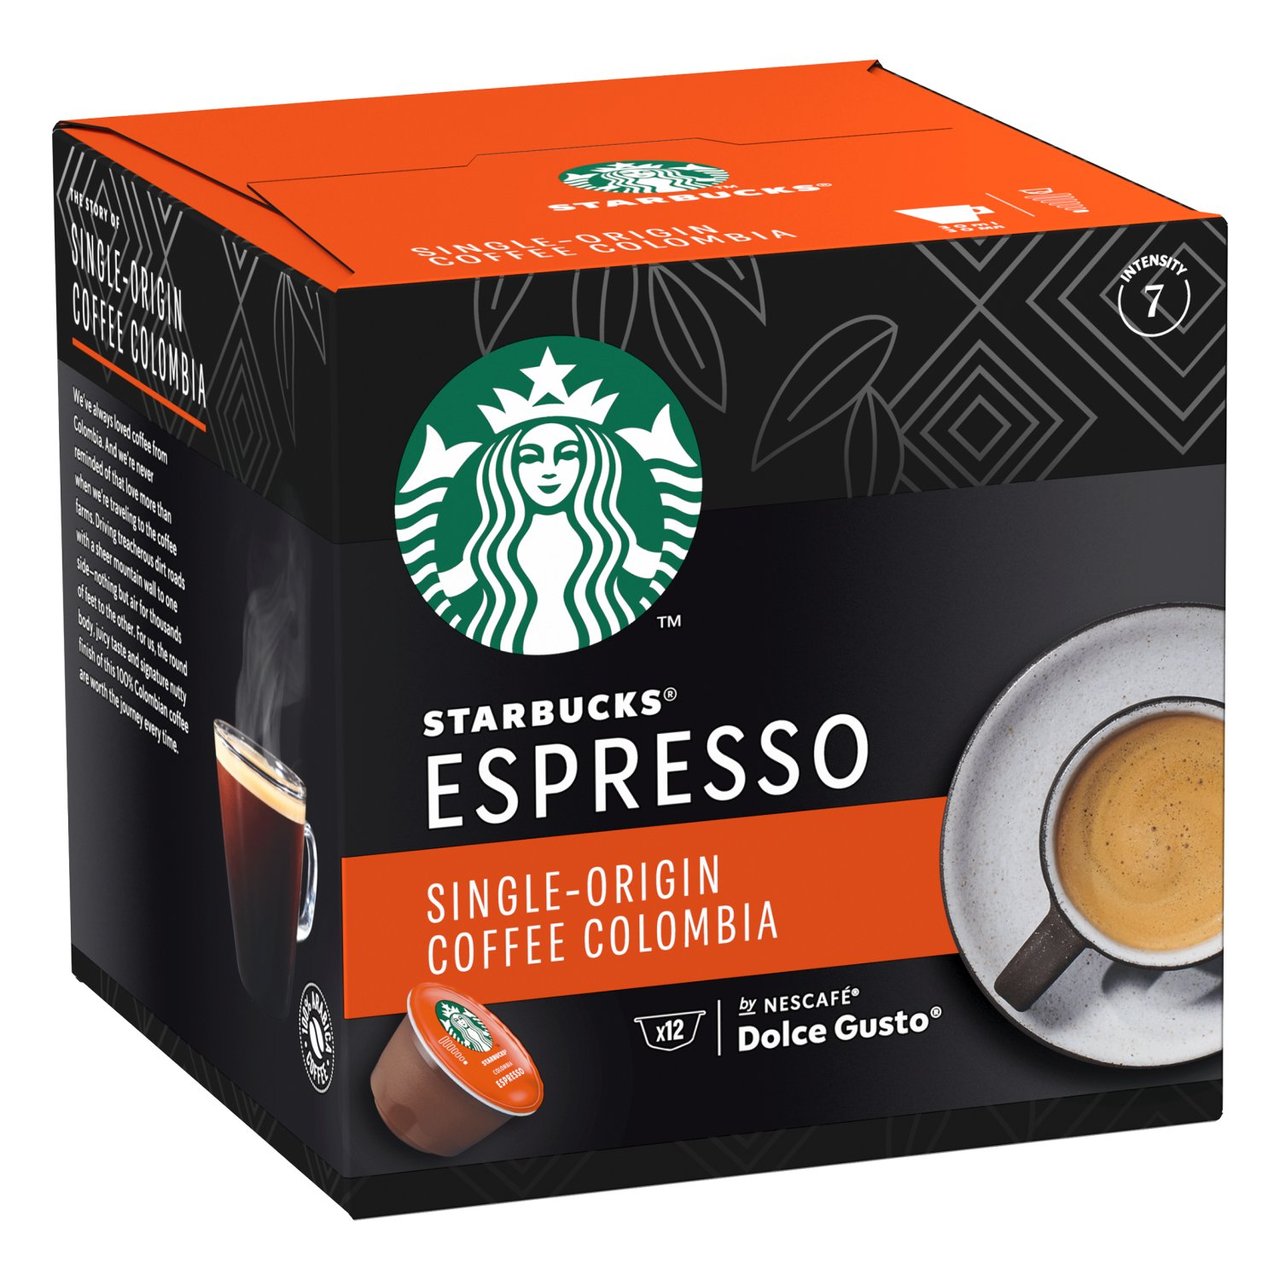 Старбакс Single-Origin Coffee Colombia. Starbucks Espresso Colombia. Сингл эспрессо. Dolce Espresso. Espresso dolce